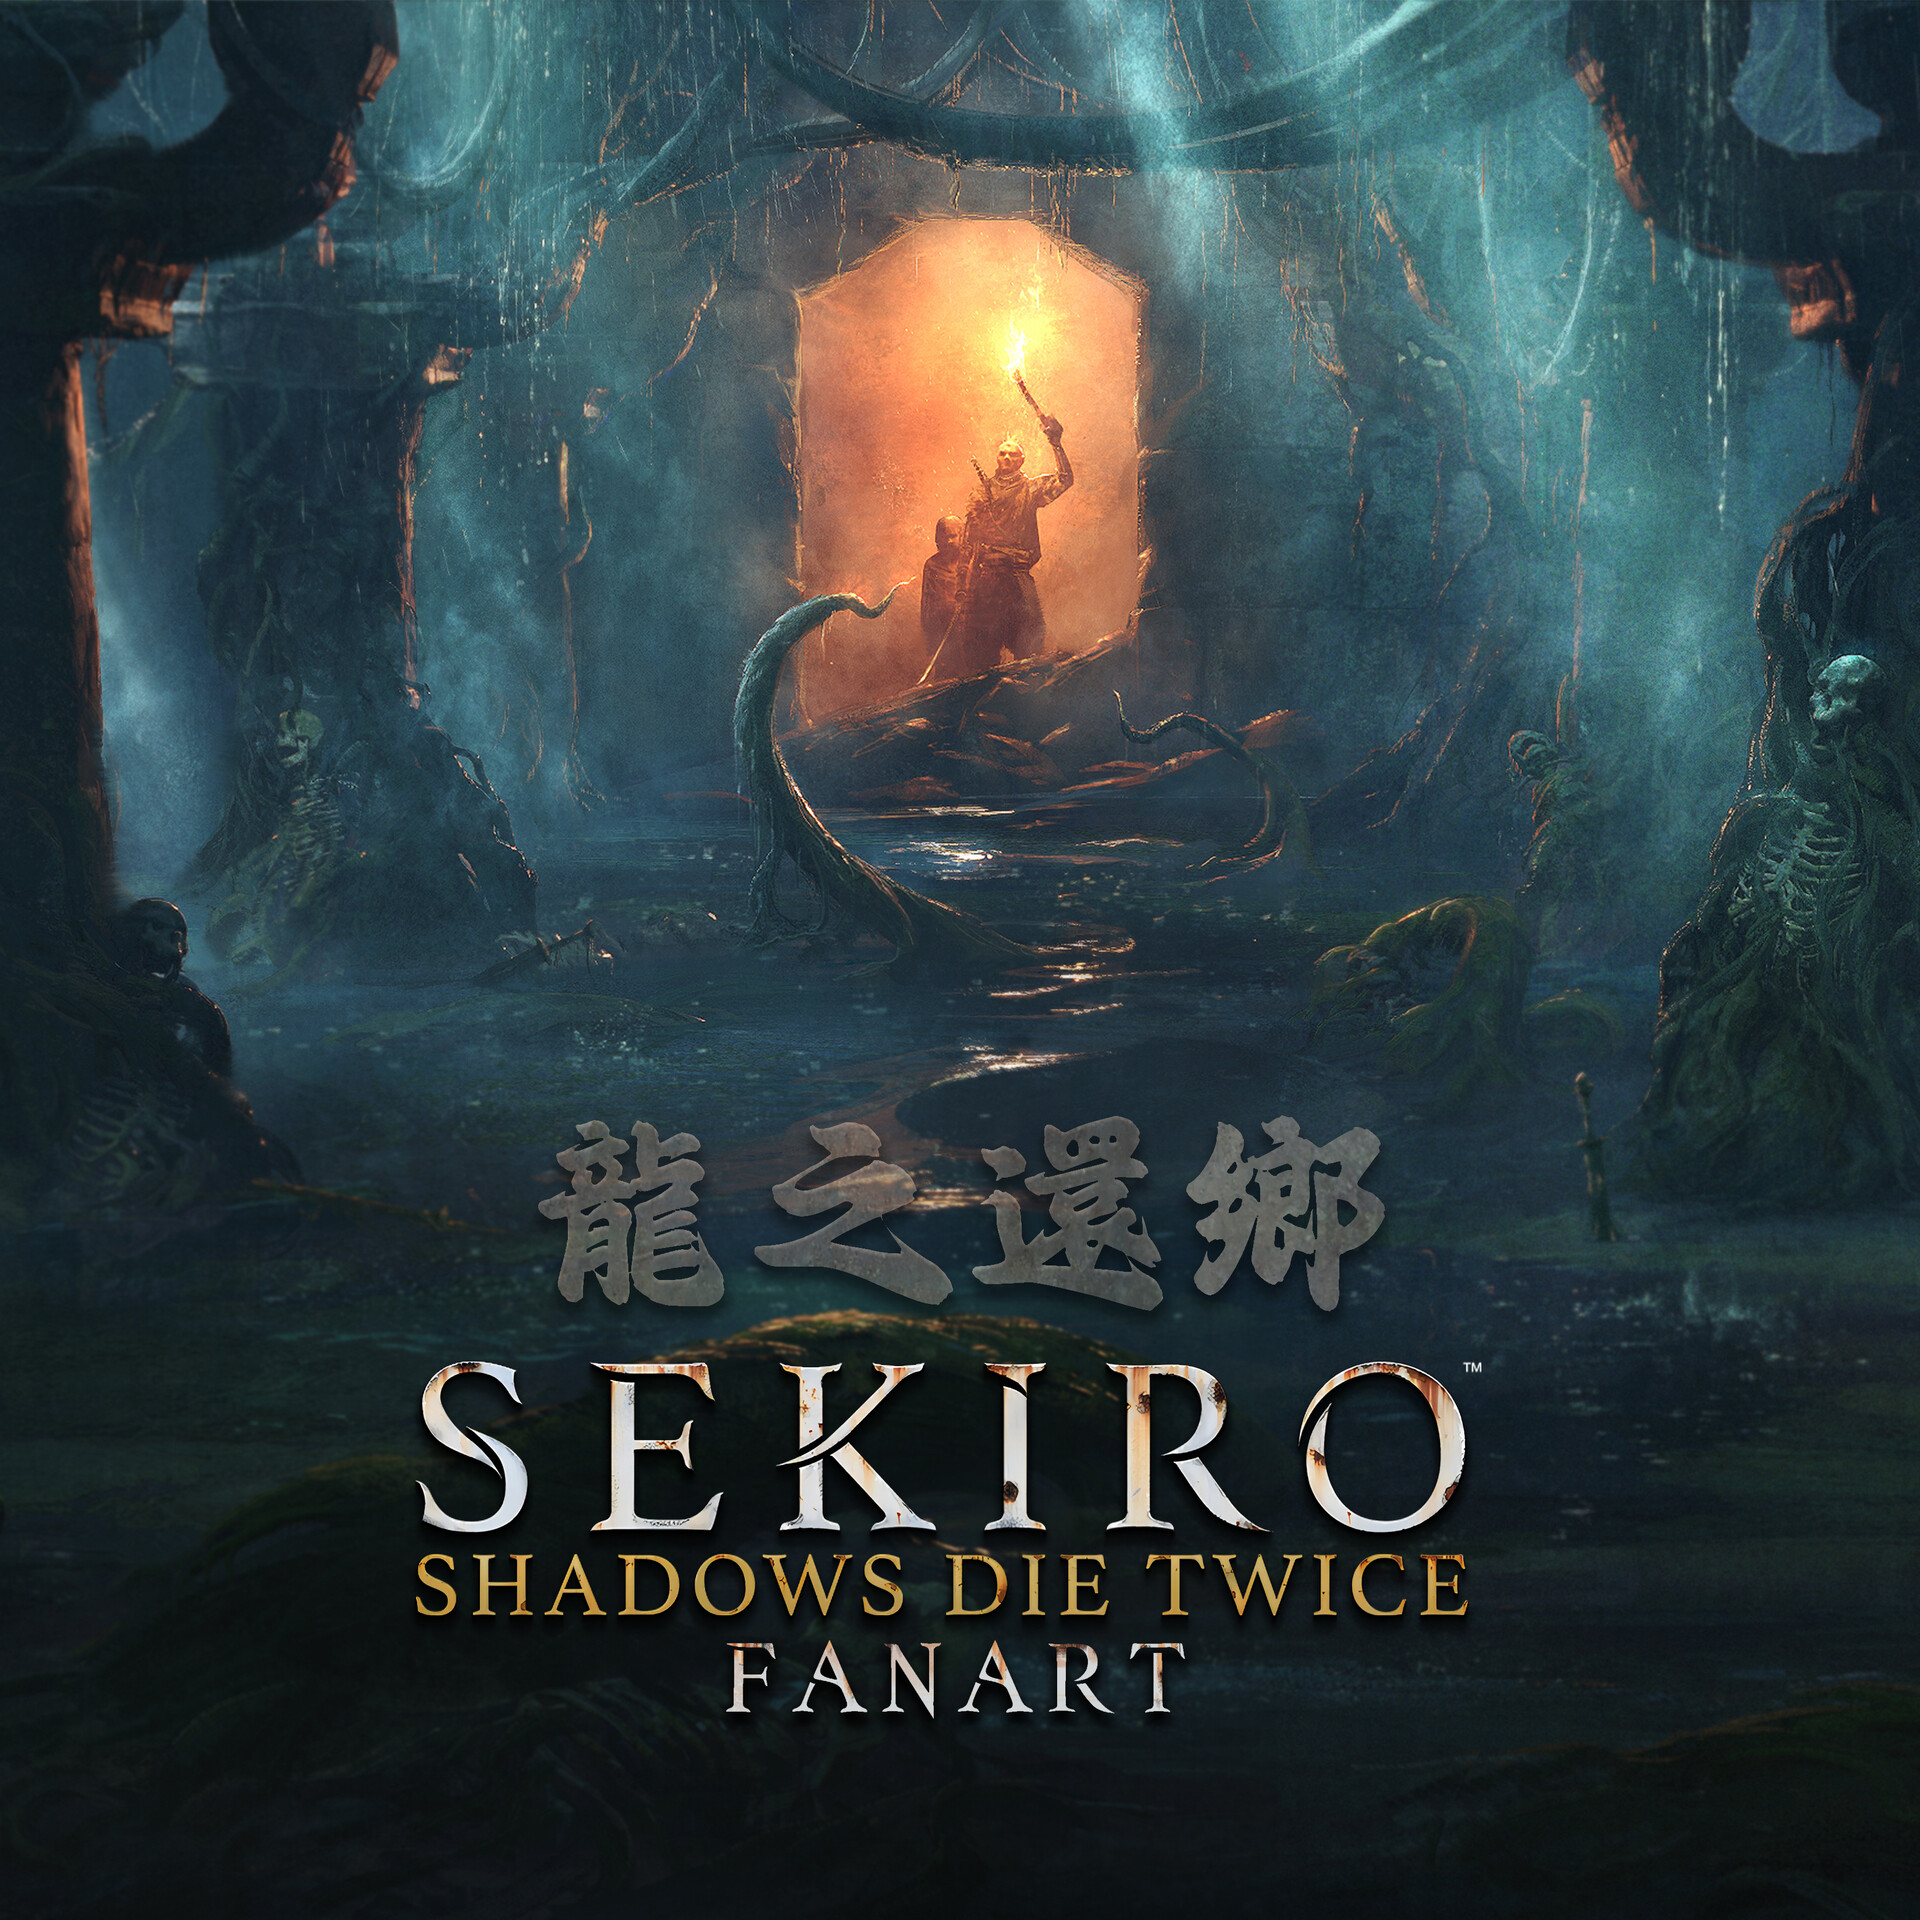 PS4] Sekiro Fan Art Alternate Cover. Credit in comments. : r/Sekiro